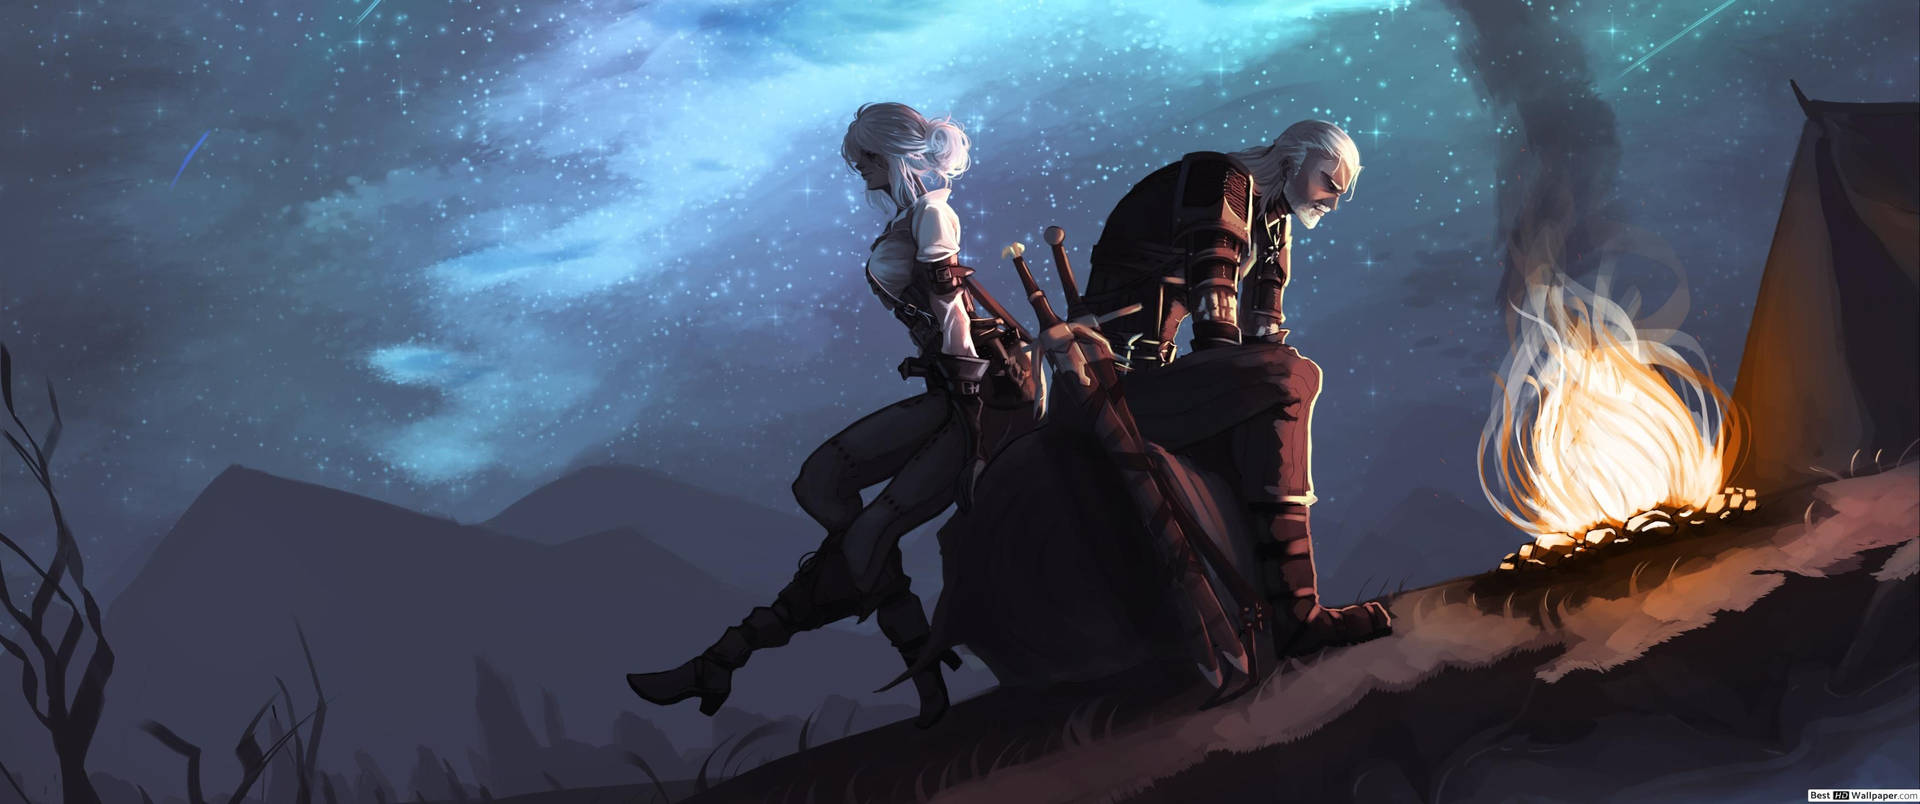 The Witcher Geralt And Ciri Fan Art Wallpaper